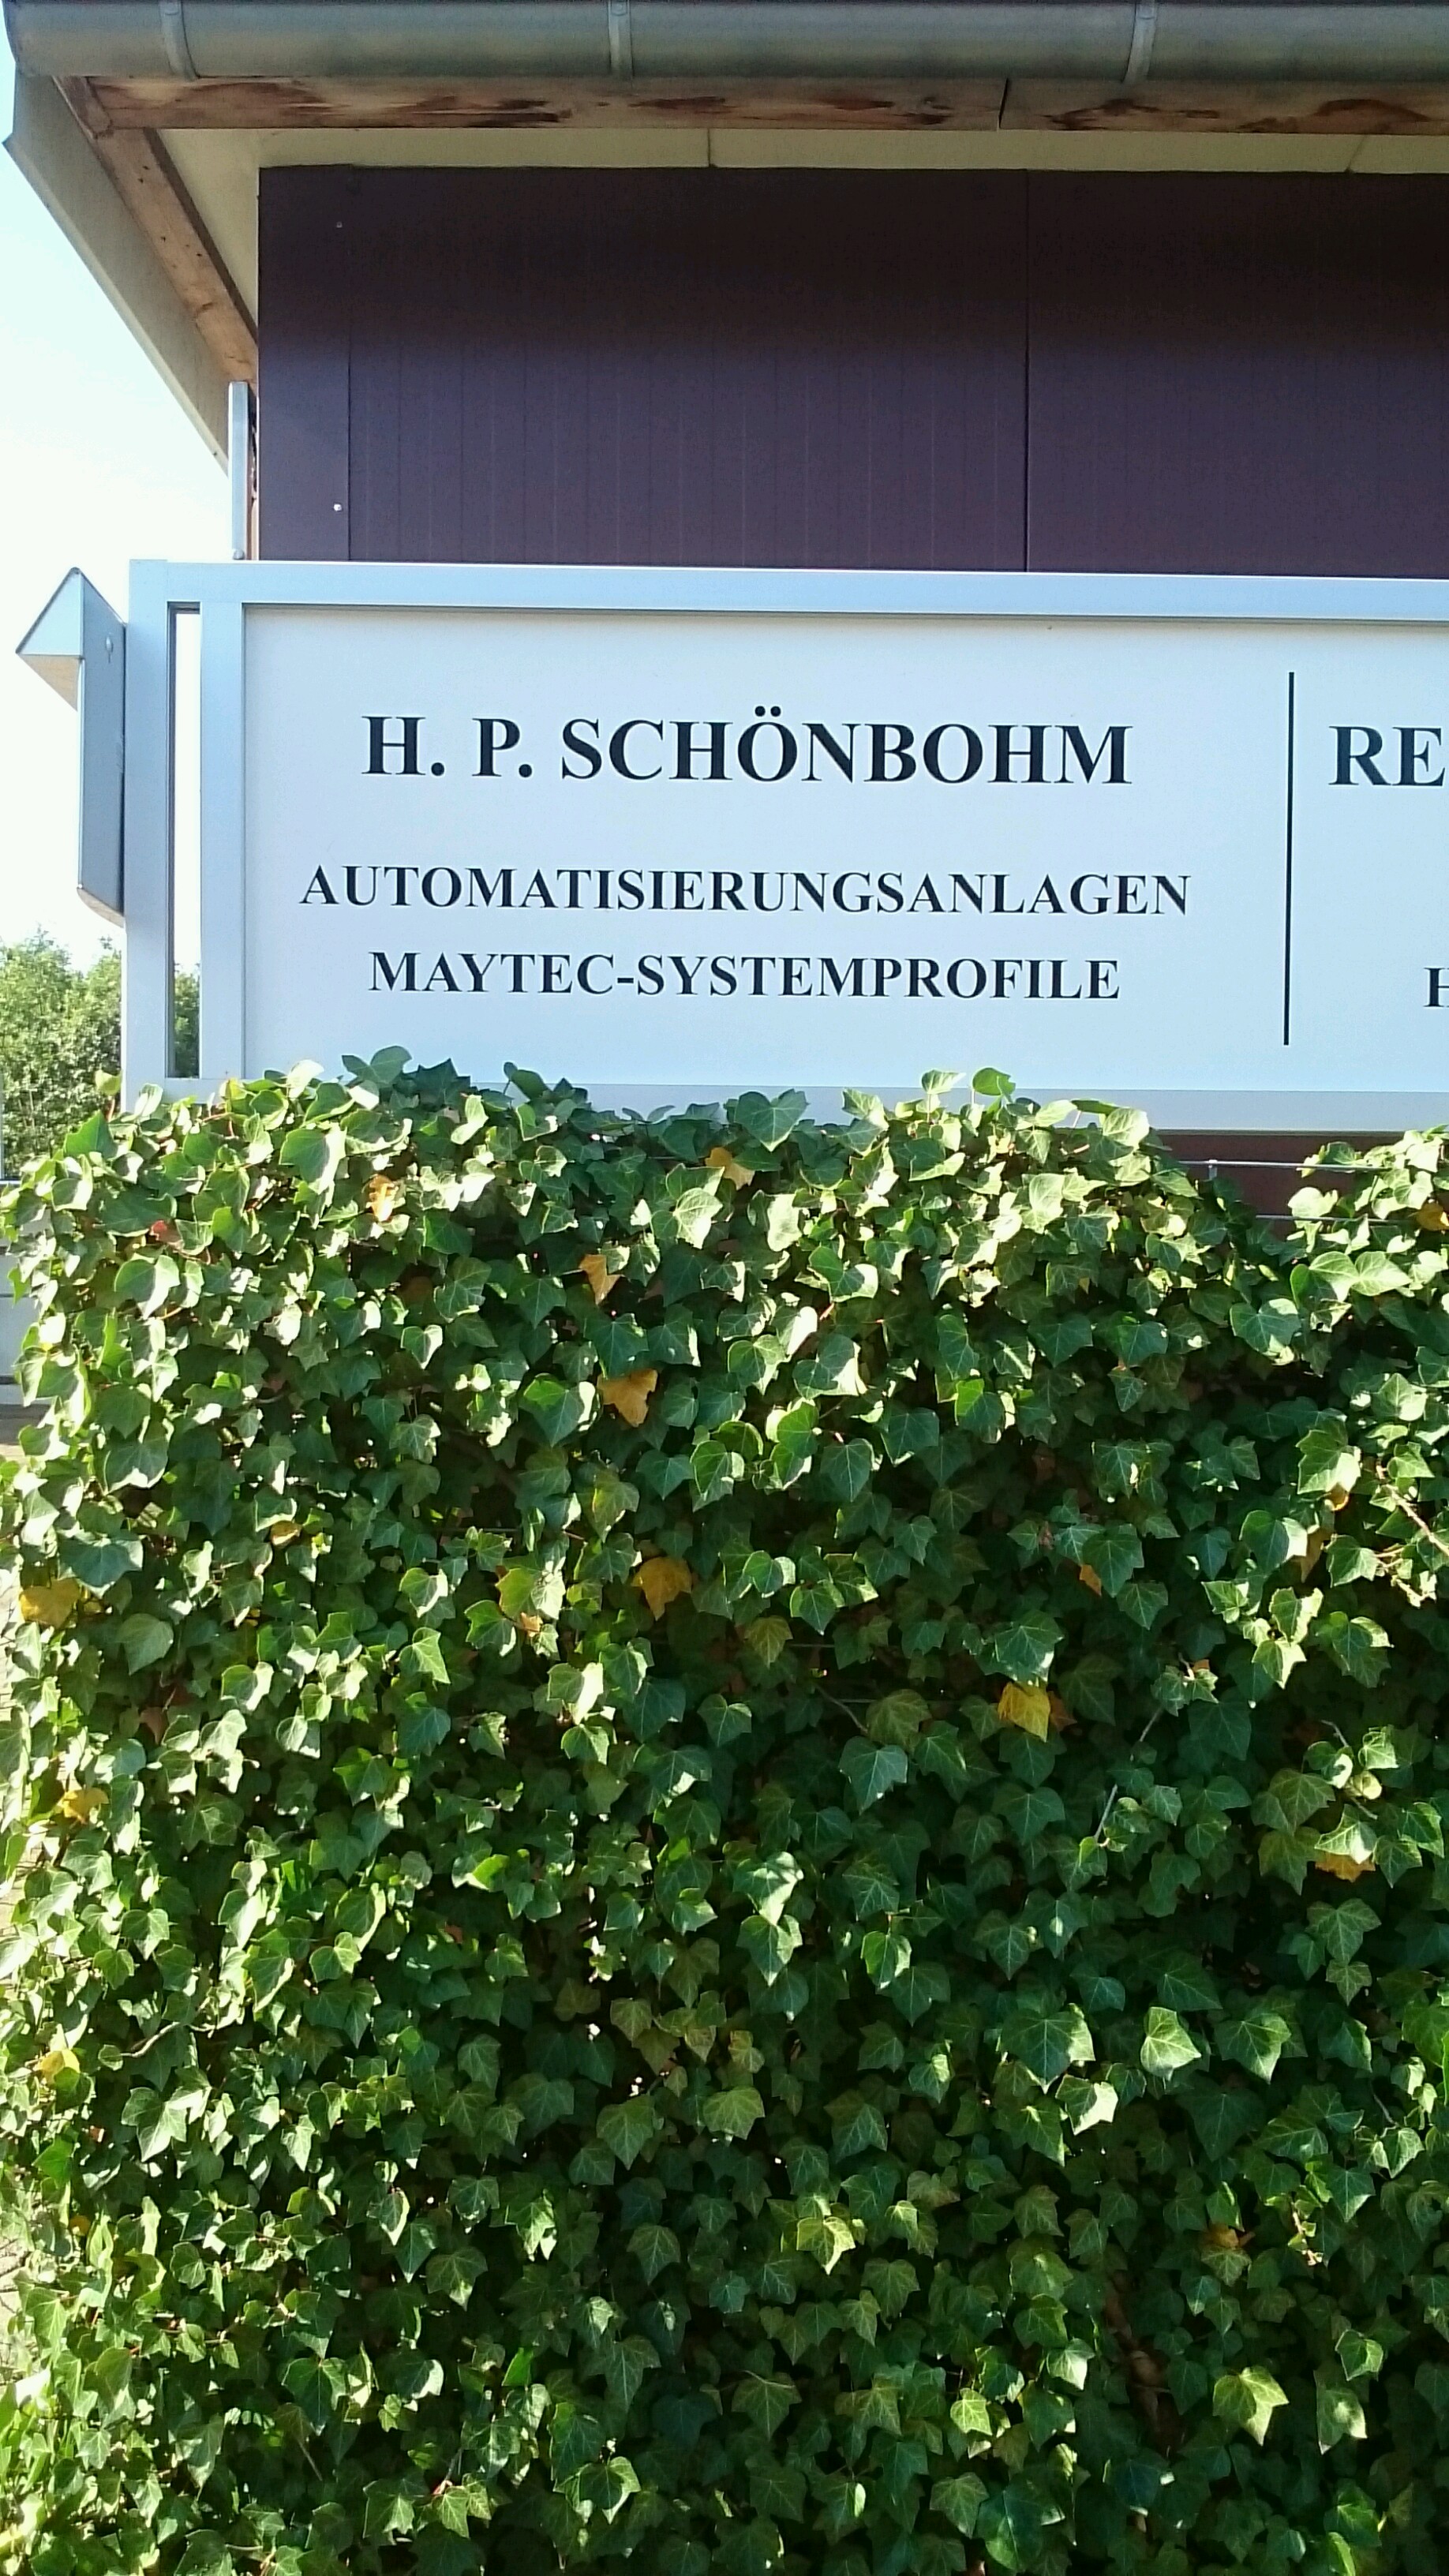 Bild 1 Schönbohm Hans-Peter Maschinenbau in Bad Schwartau